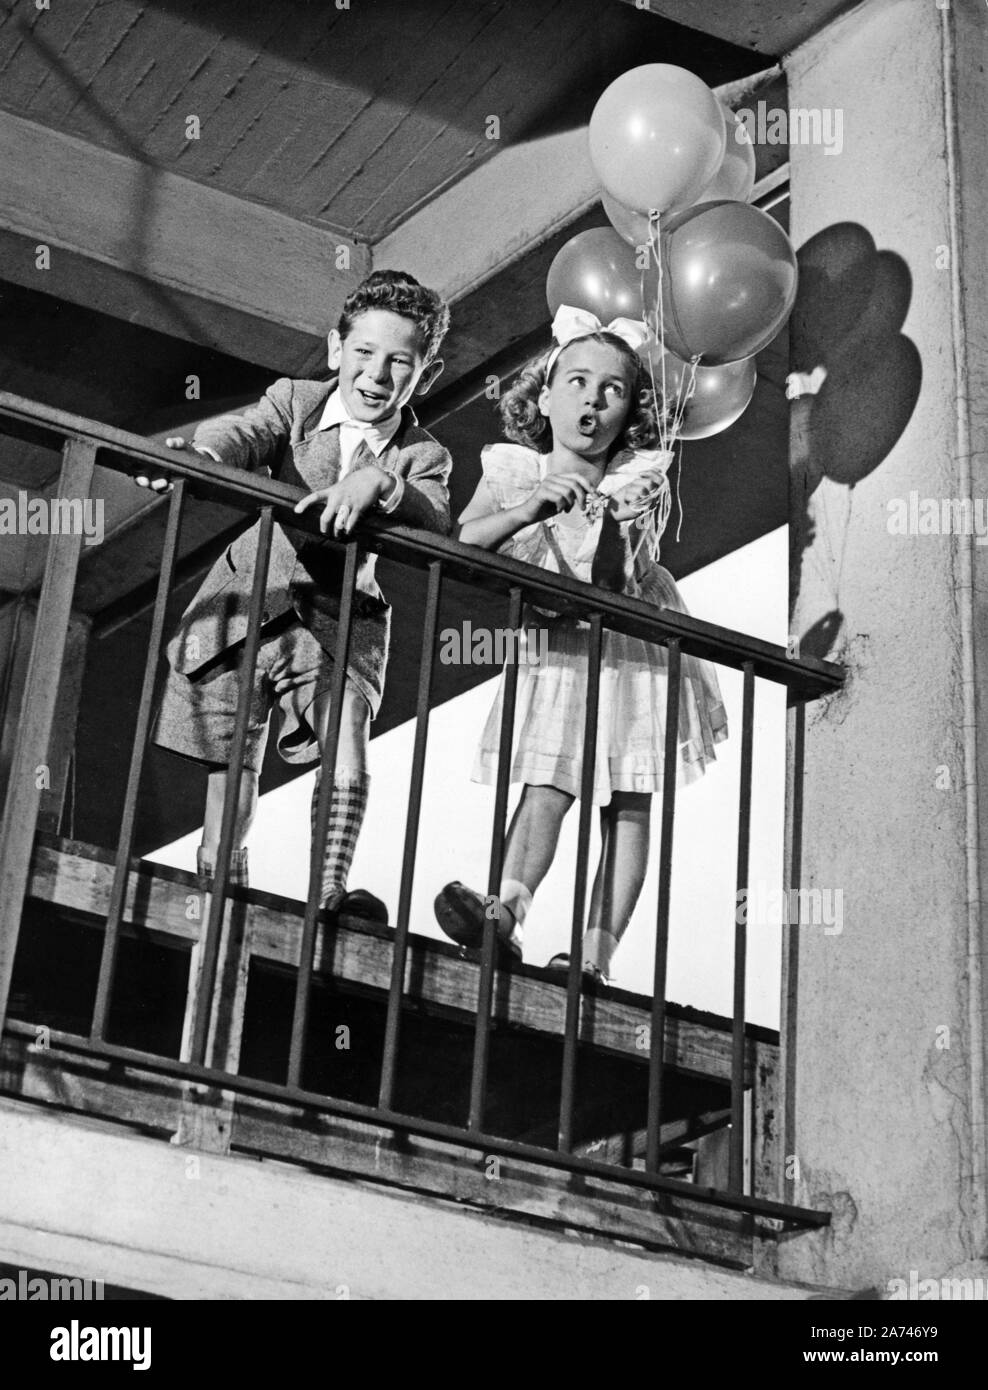 Große Star-Parade, Deutschland 1954, Regie: Paul Martin, Darsteller: Peter Hinnen, Cornelia Conny Froboess Stock Photo